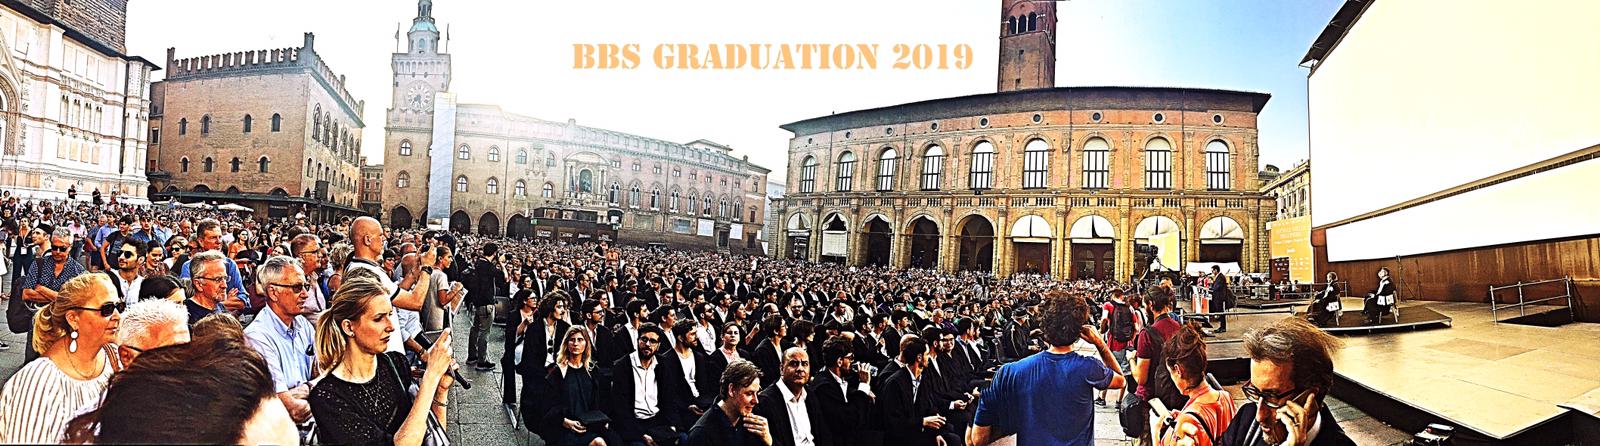 laboratorio delle idee bologna business school 2019 graduation